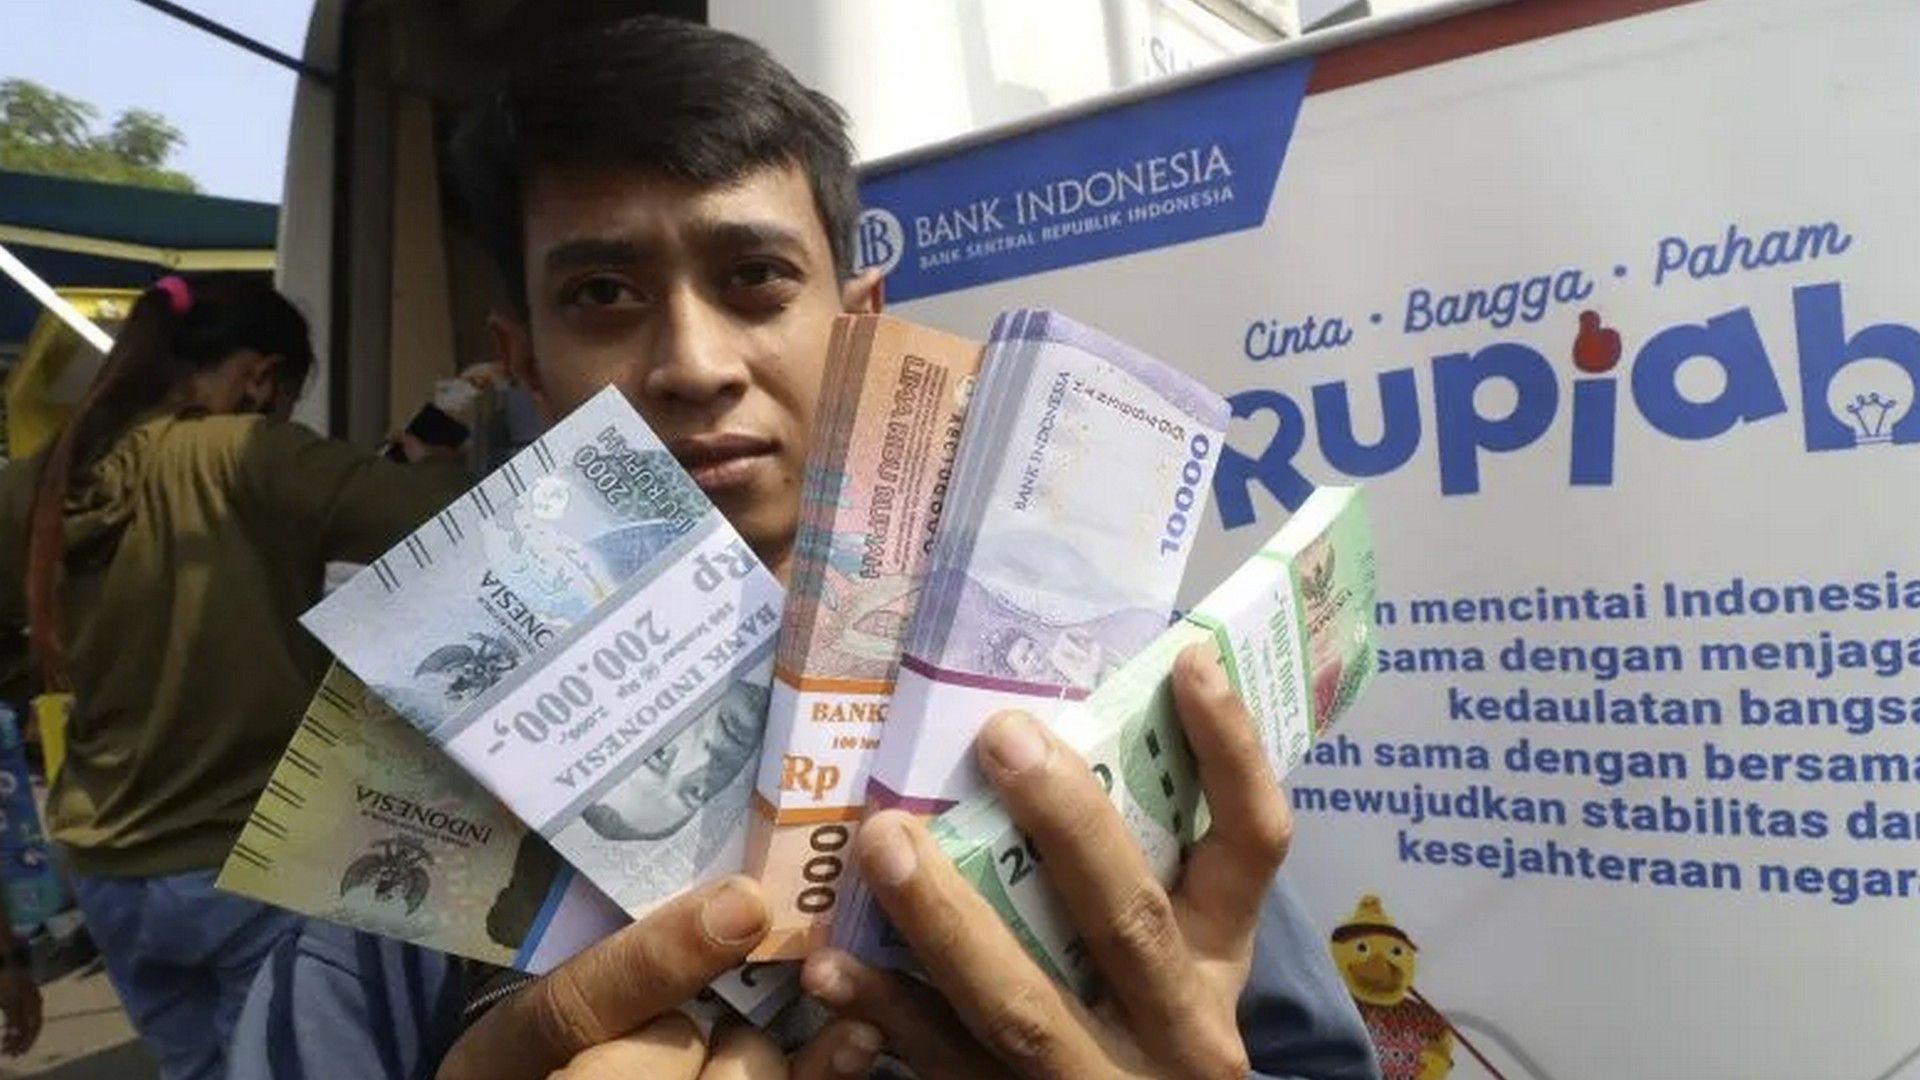 Jelang Idul Fitri, Bank Indonesia Layani Penukaran Uang Baru, Ini Lokasinya di Tangerang